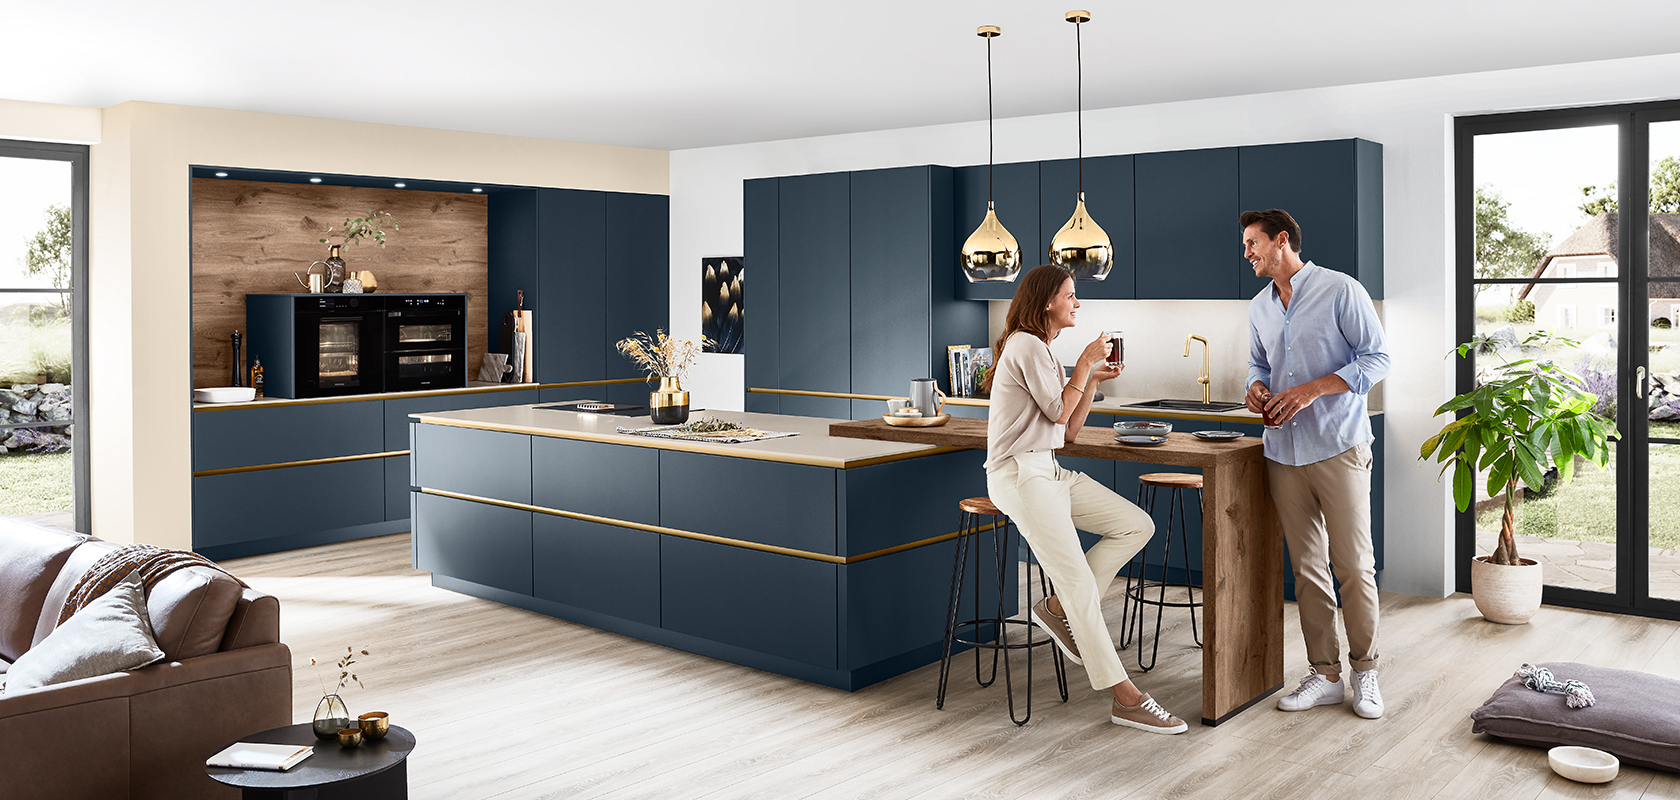 Moderne keukeninterieur met een stel dat geniet van wijn rond een stijlvol eiland met strakke marineblauwe kasten en elegante gouden accenten, onder warme hanglampen.